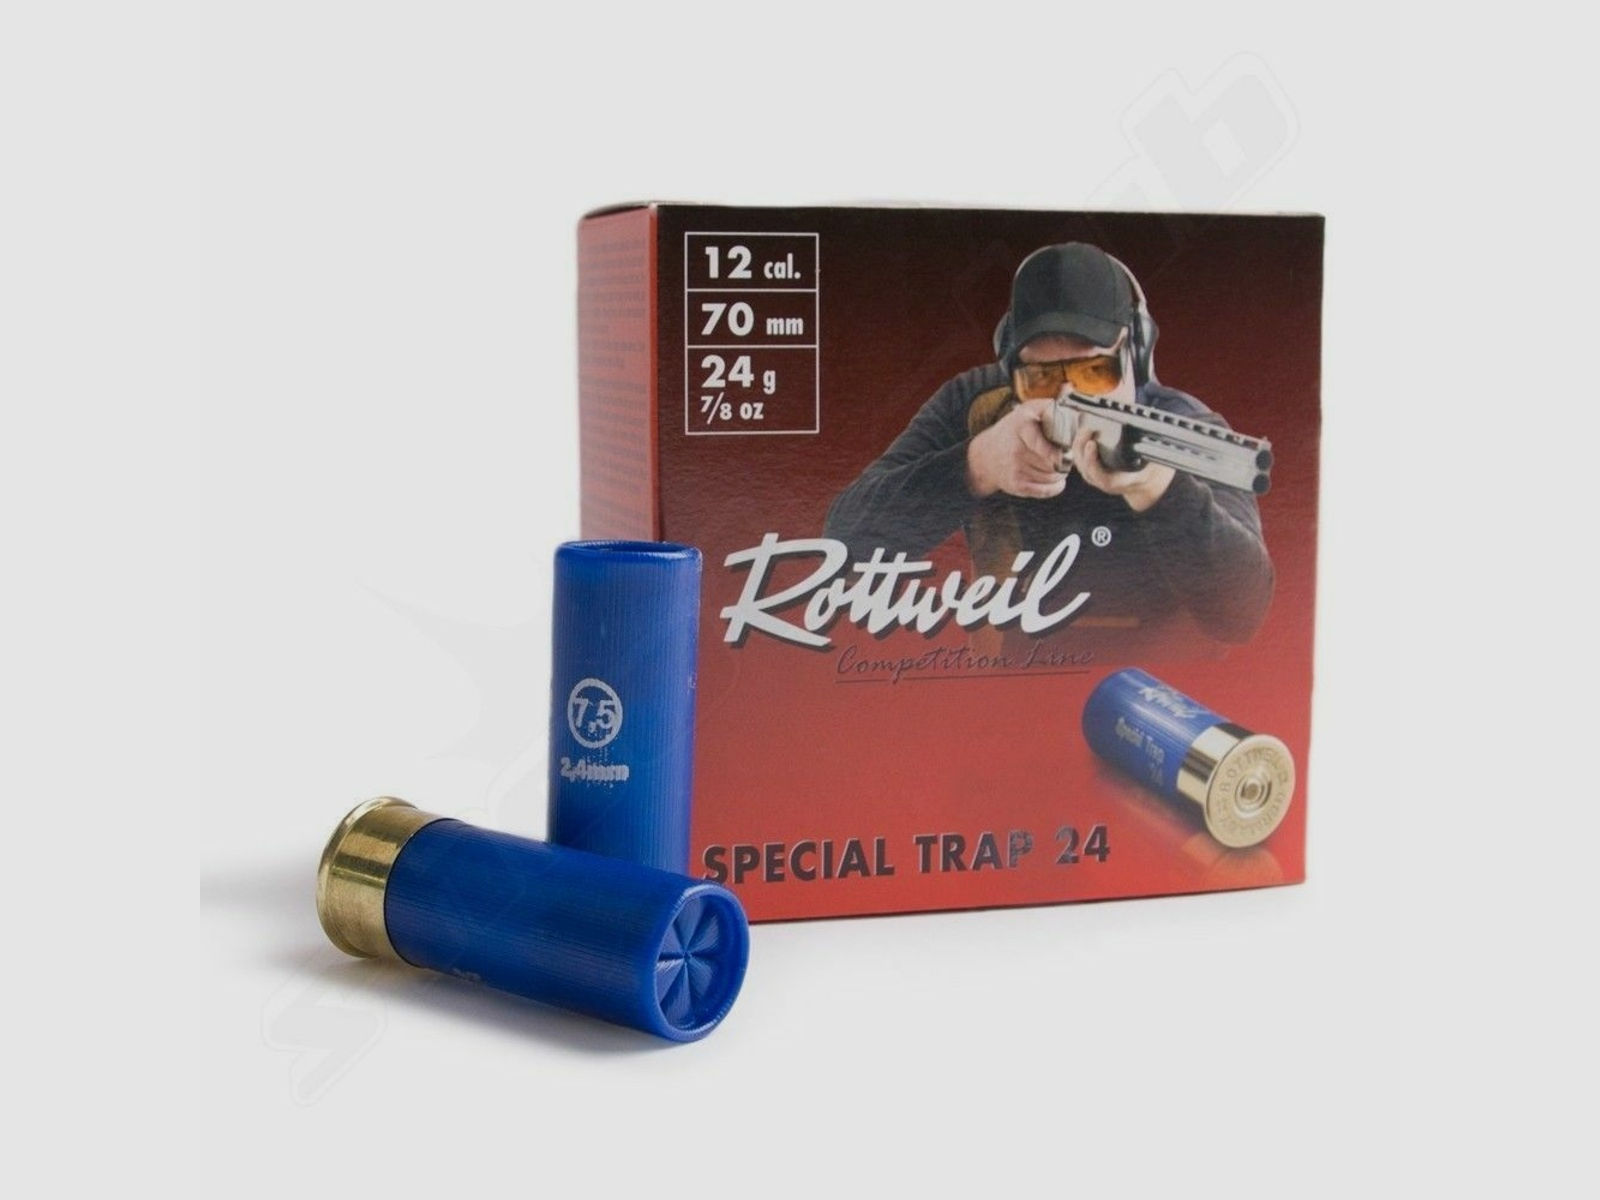 Rottweil	 Special Trap 24 Bleischrot 12/70 / 24 g / 2,4 mm / 25 Stk